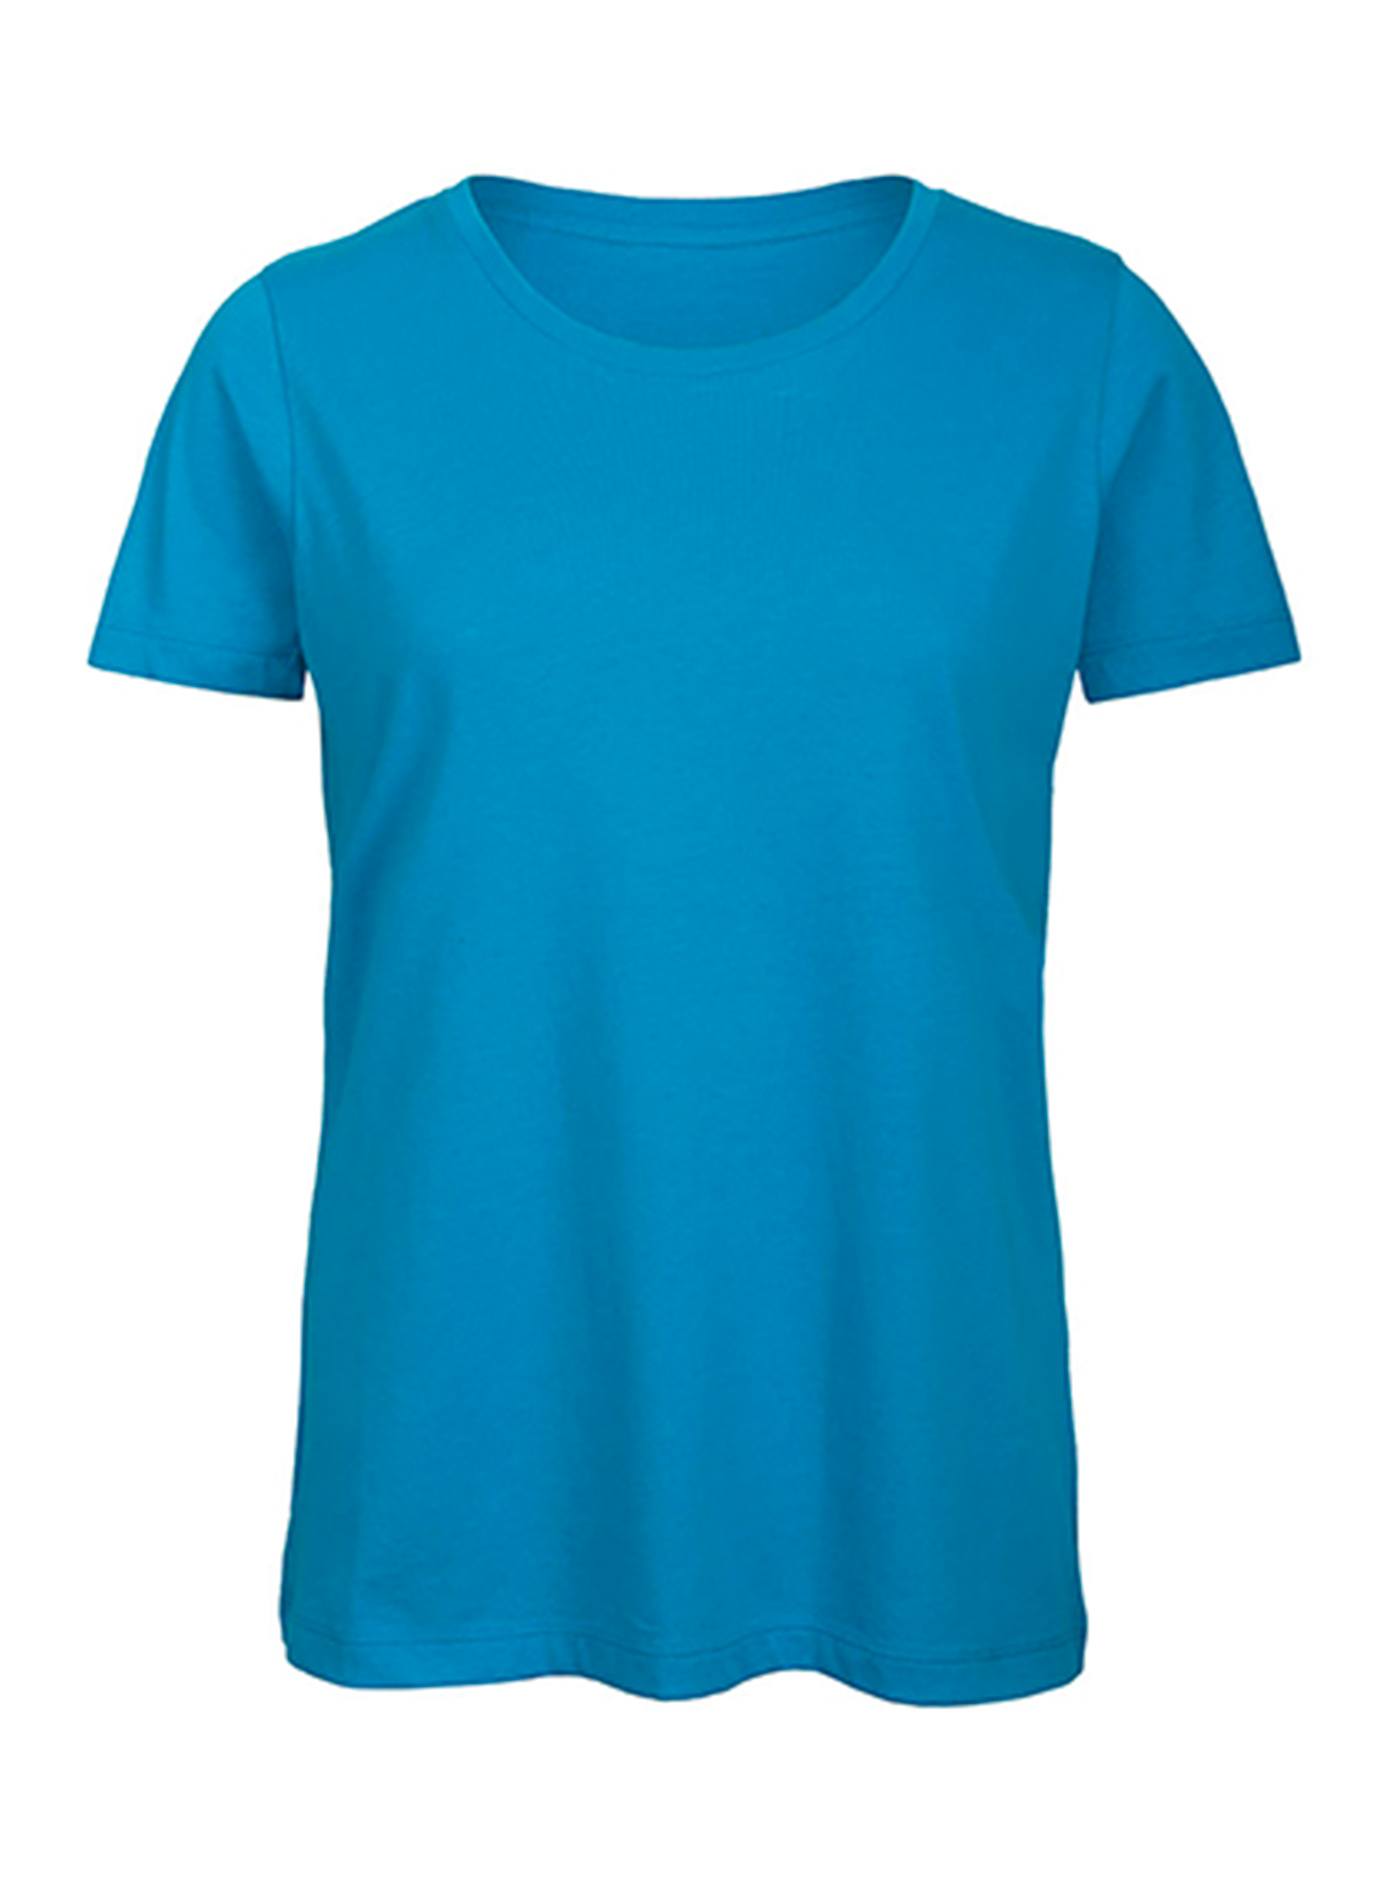 Dámské tričko B&C Collection Inspire - Blankytně modrá S